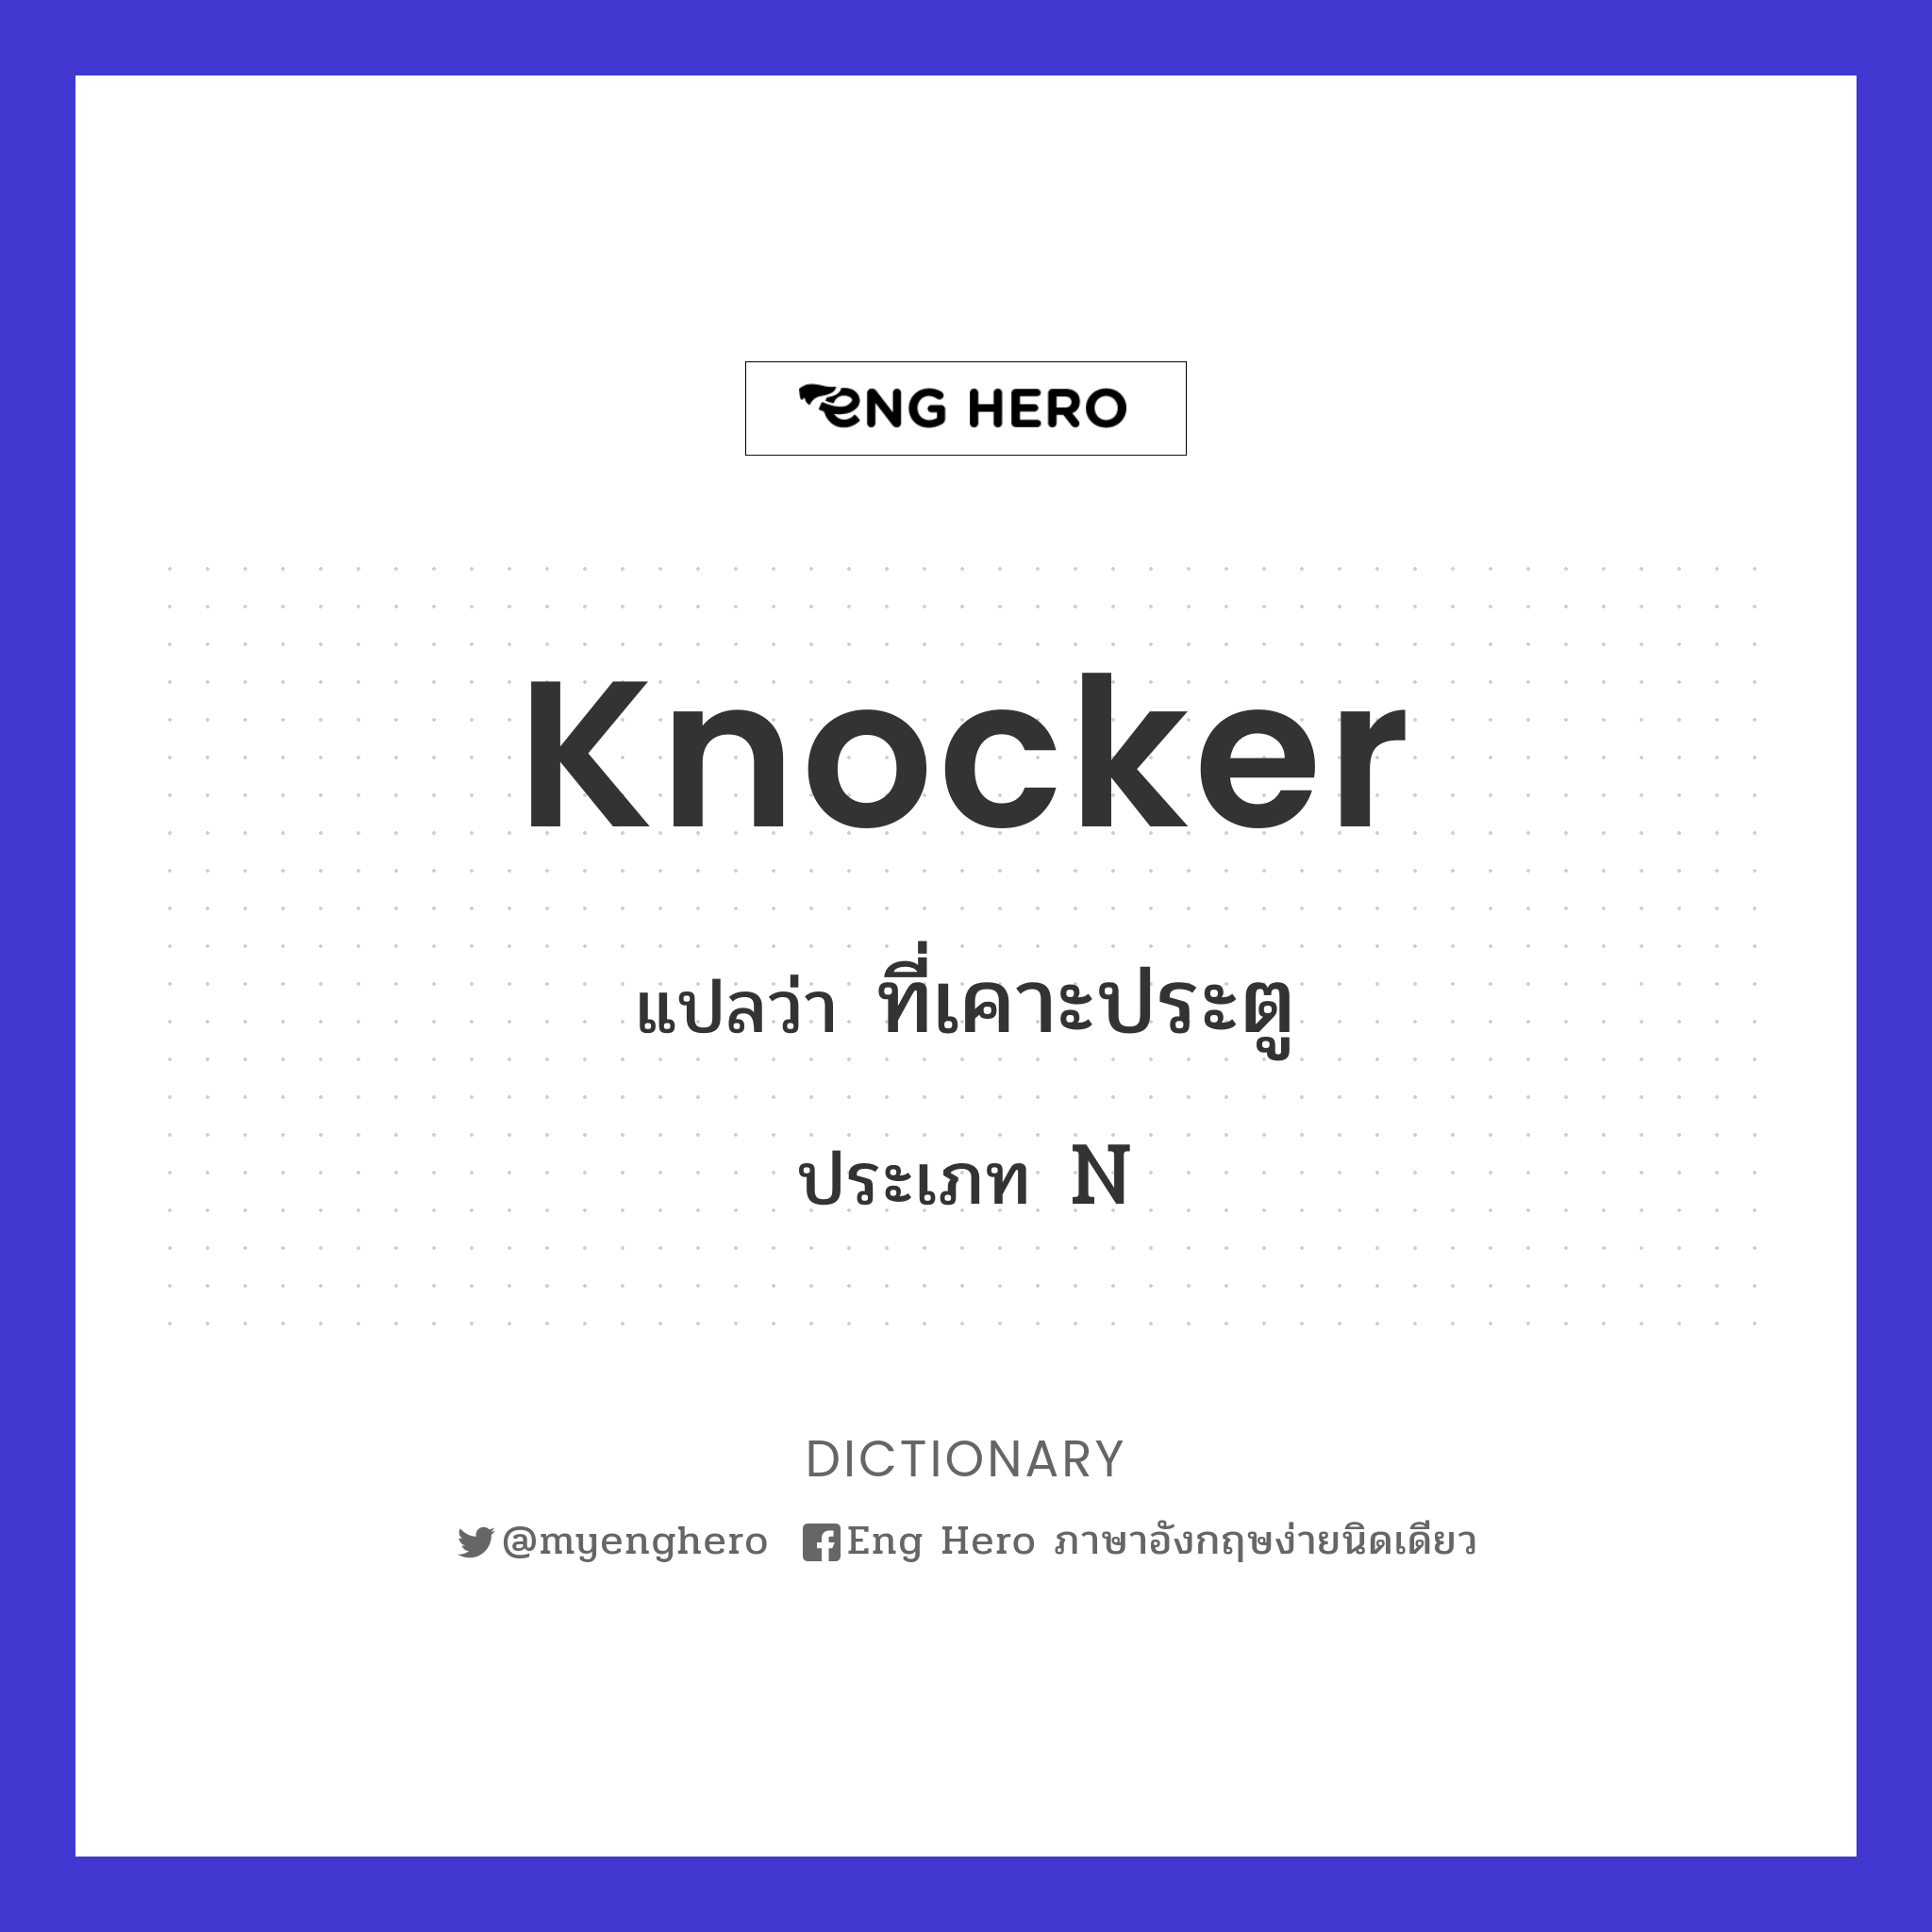 knocker